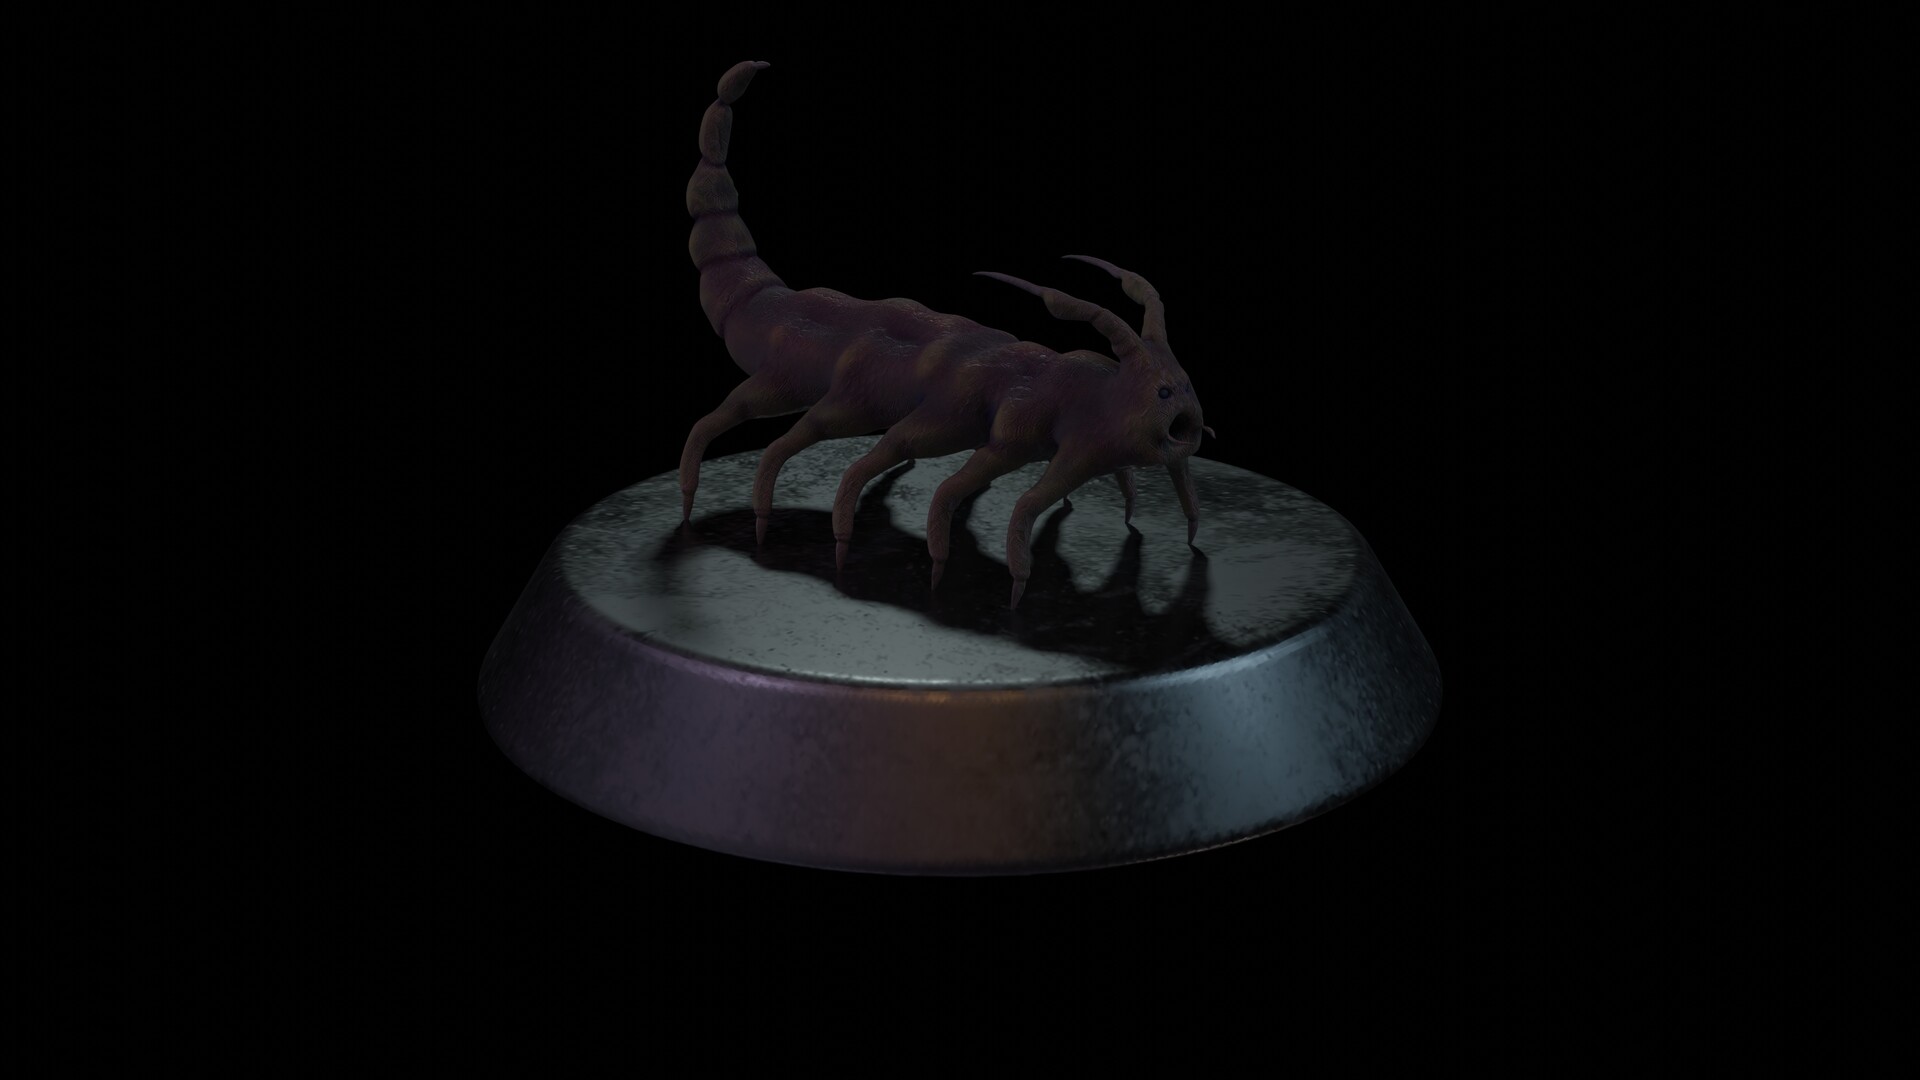 jon-moberly-alien-scorpion-blender-rende